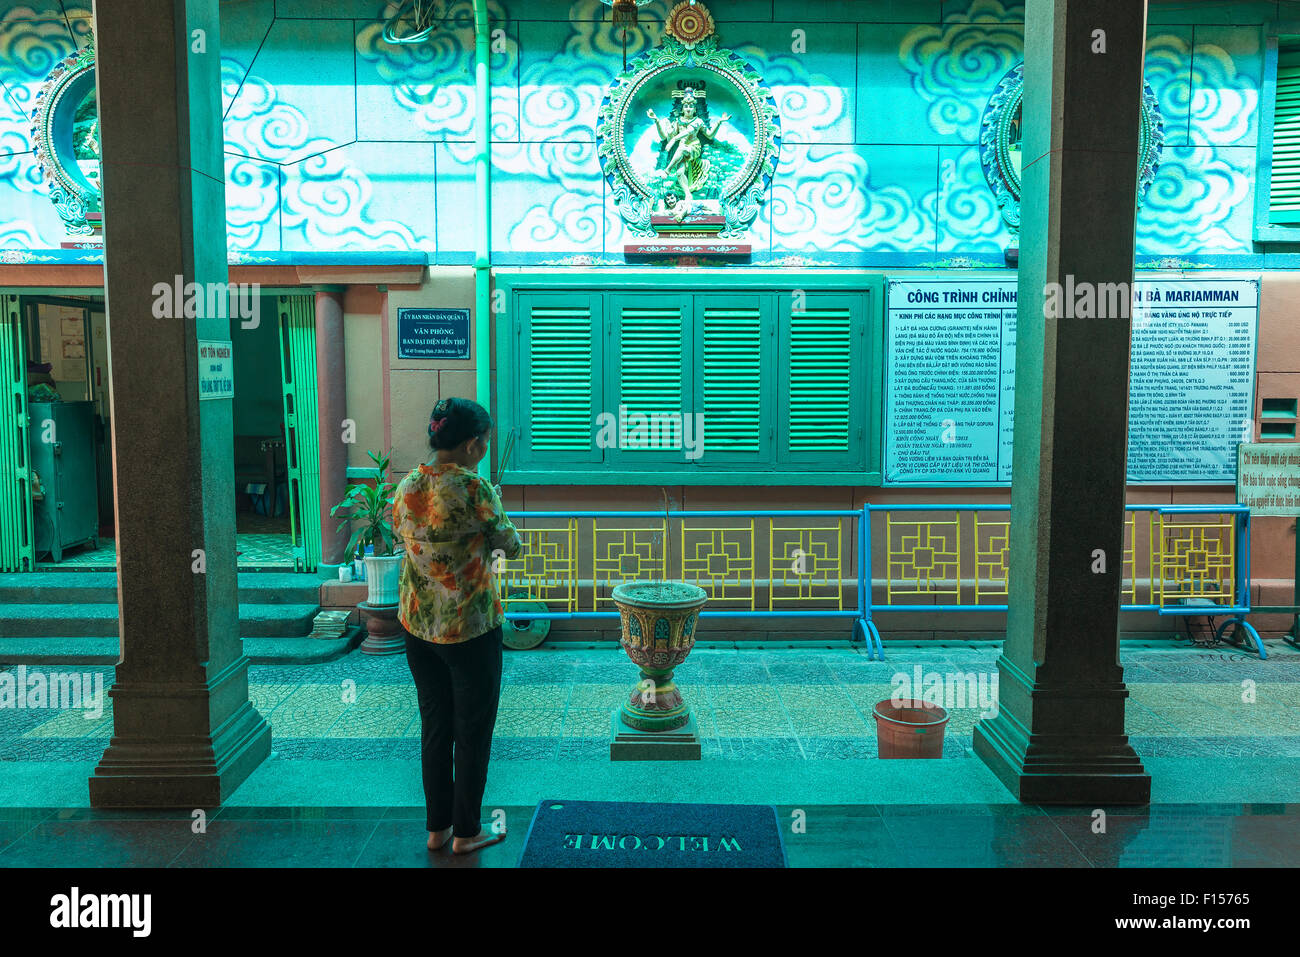 Beten, einen einsamen Besucher der Mariamman Hindu-Tempel in Ho-Chi-Minh-Stadt, Vietnam, Vietnam-Frau führt einen Akt der Anbetung. Stockfoto